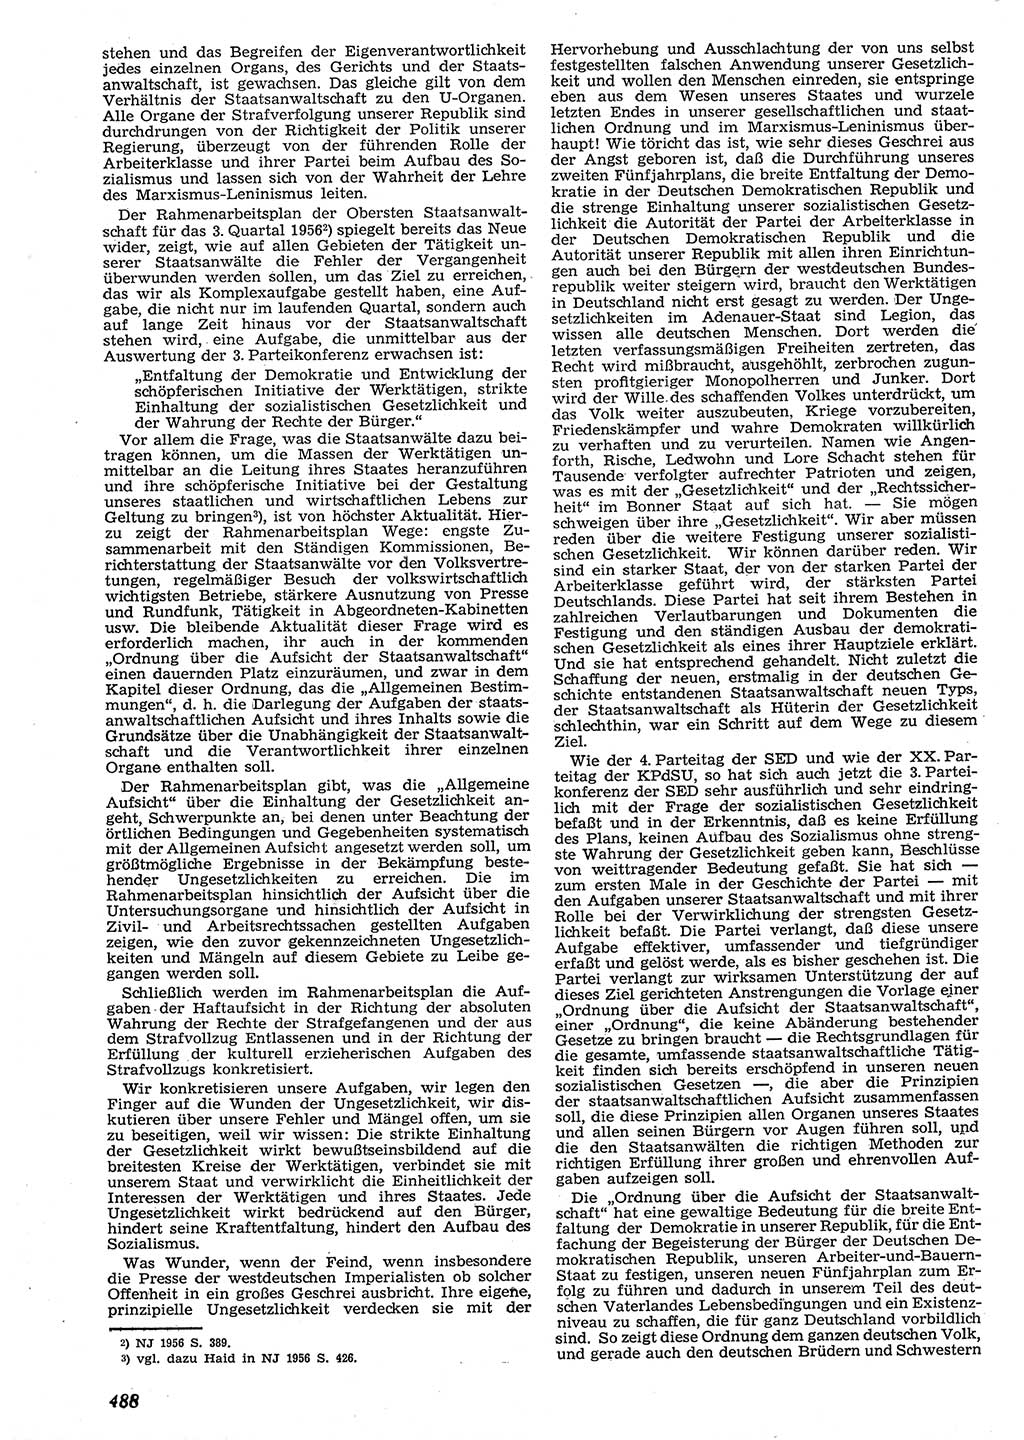 Neue Justiz (NJ), Zeitschrift für Recht und Rechtswissenschaft [Deutsche Demokratische Republik (DDR)], 10. Jahrgang 1956, Seite 488 (NJ DDR 1956, S. 488)